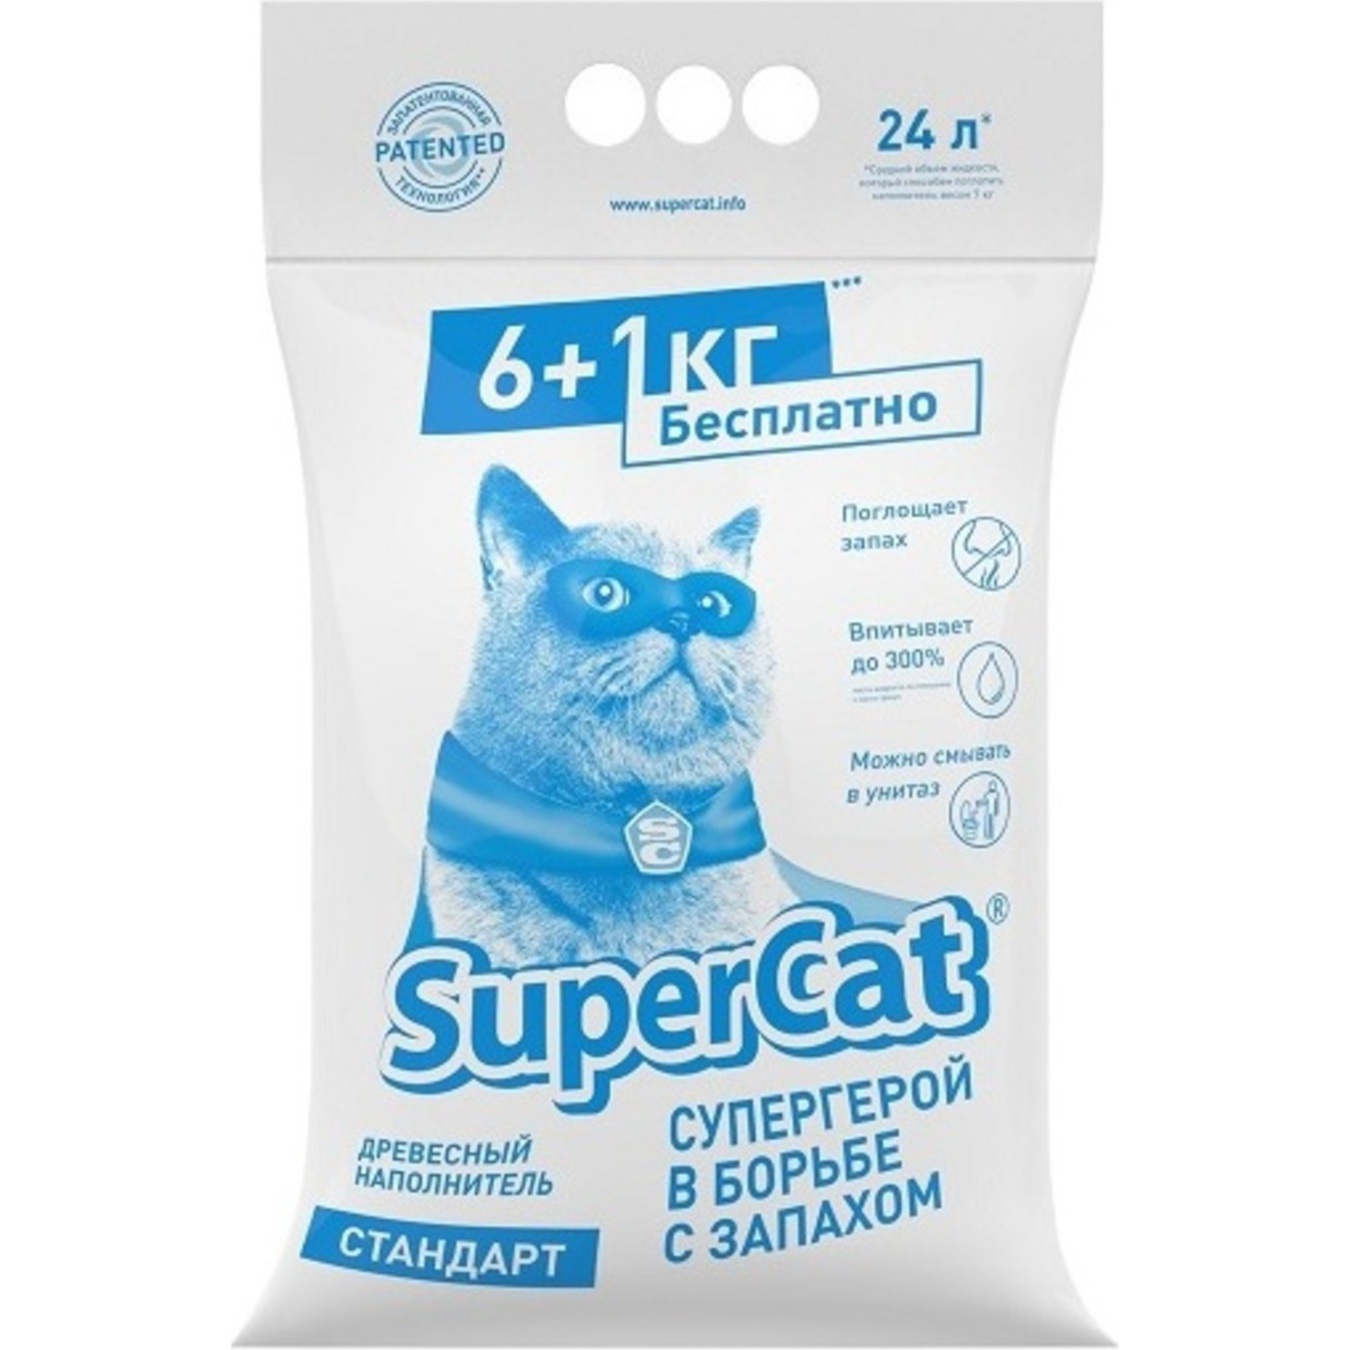 Наповнювач Super Cat Стандарт гігієнічний для котячого туалету 7кг